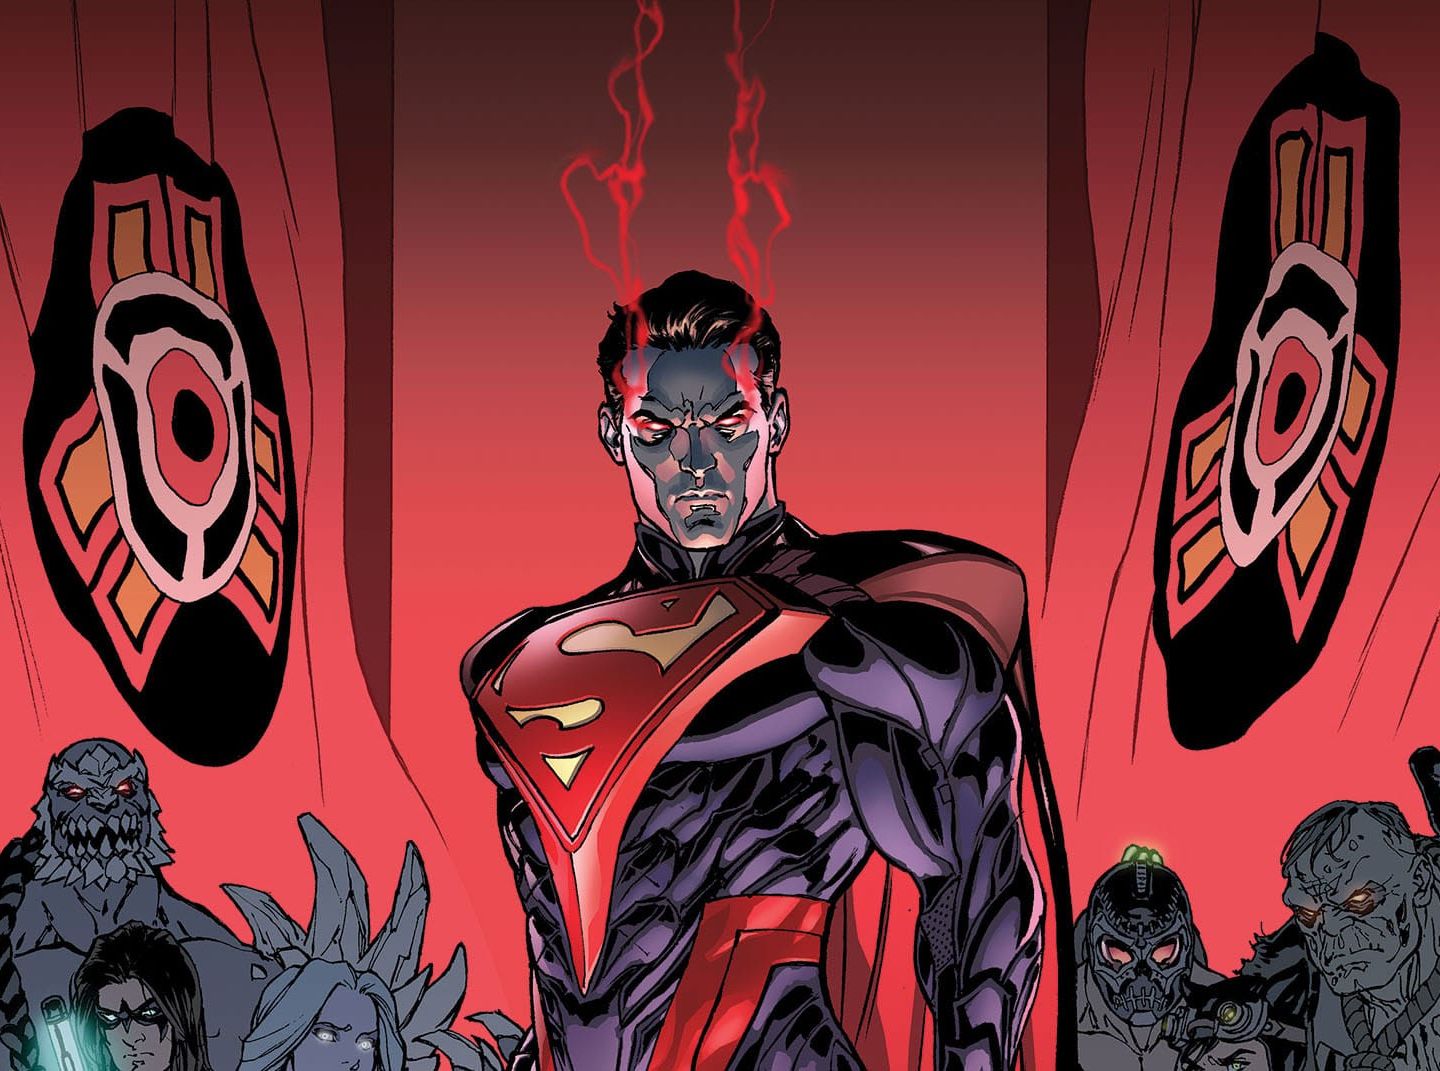 DC выпустили анимационную версию супергеройского файтинга Injustice и разозлили фанатов